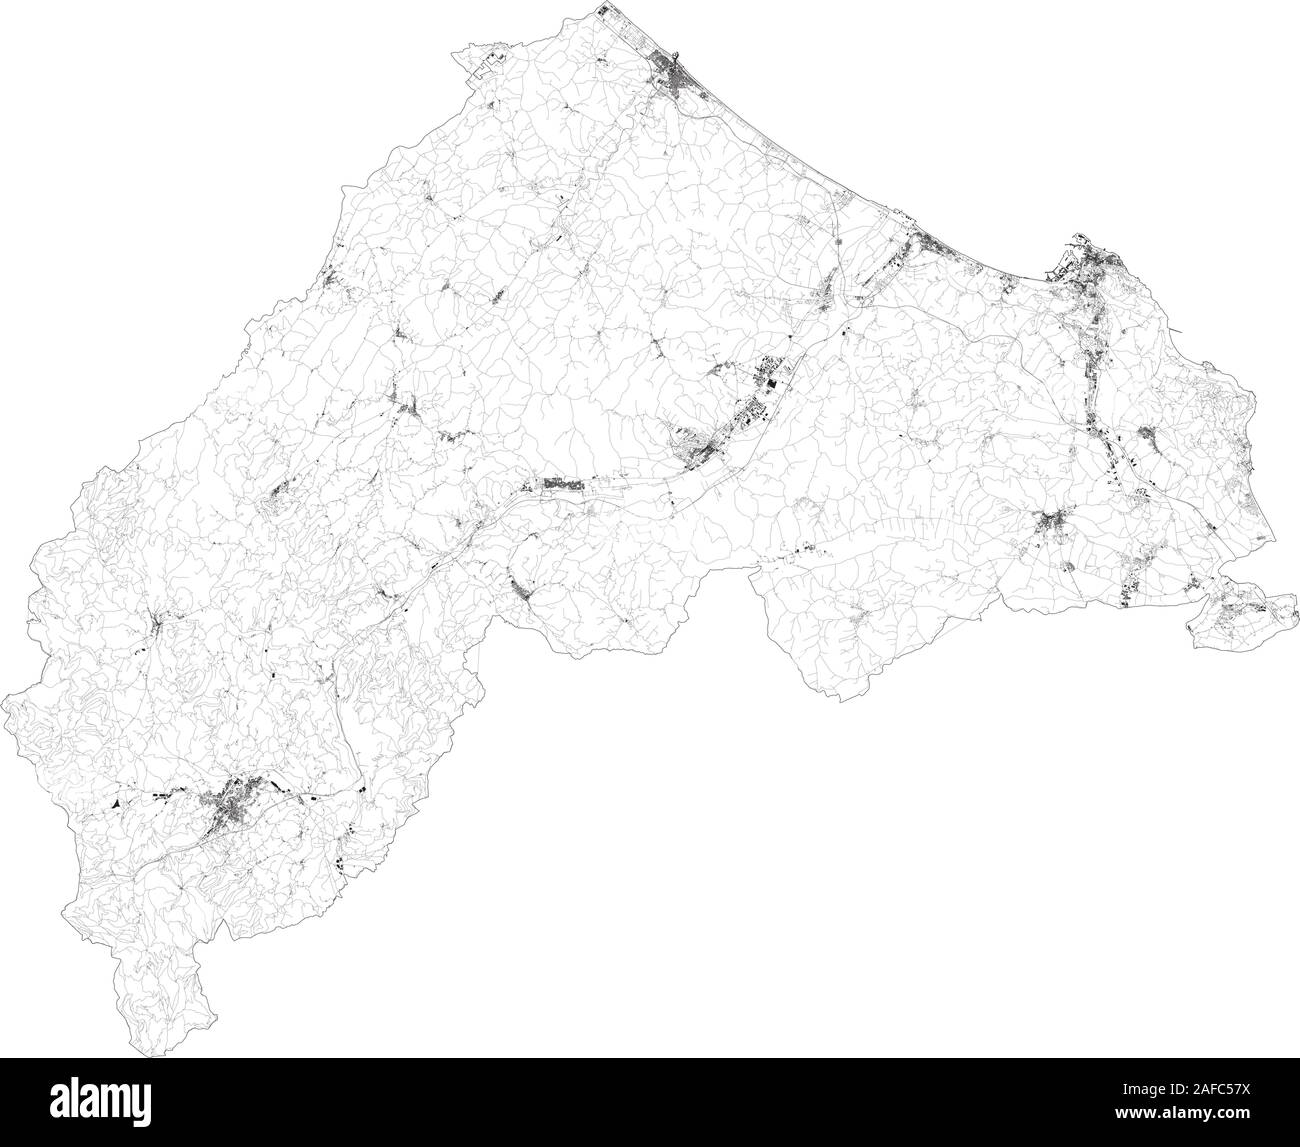 Mappa satellitare della provincia di Ancona città e strade, edifici e strade di collegamento delle aree circostanti. La regione Marche, Italia. Mappa strade, strade ad anello Illustrazione Vettoriale